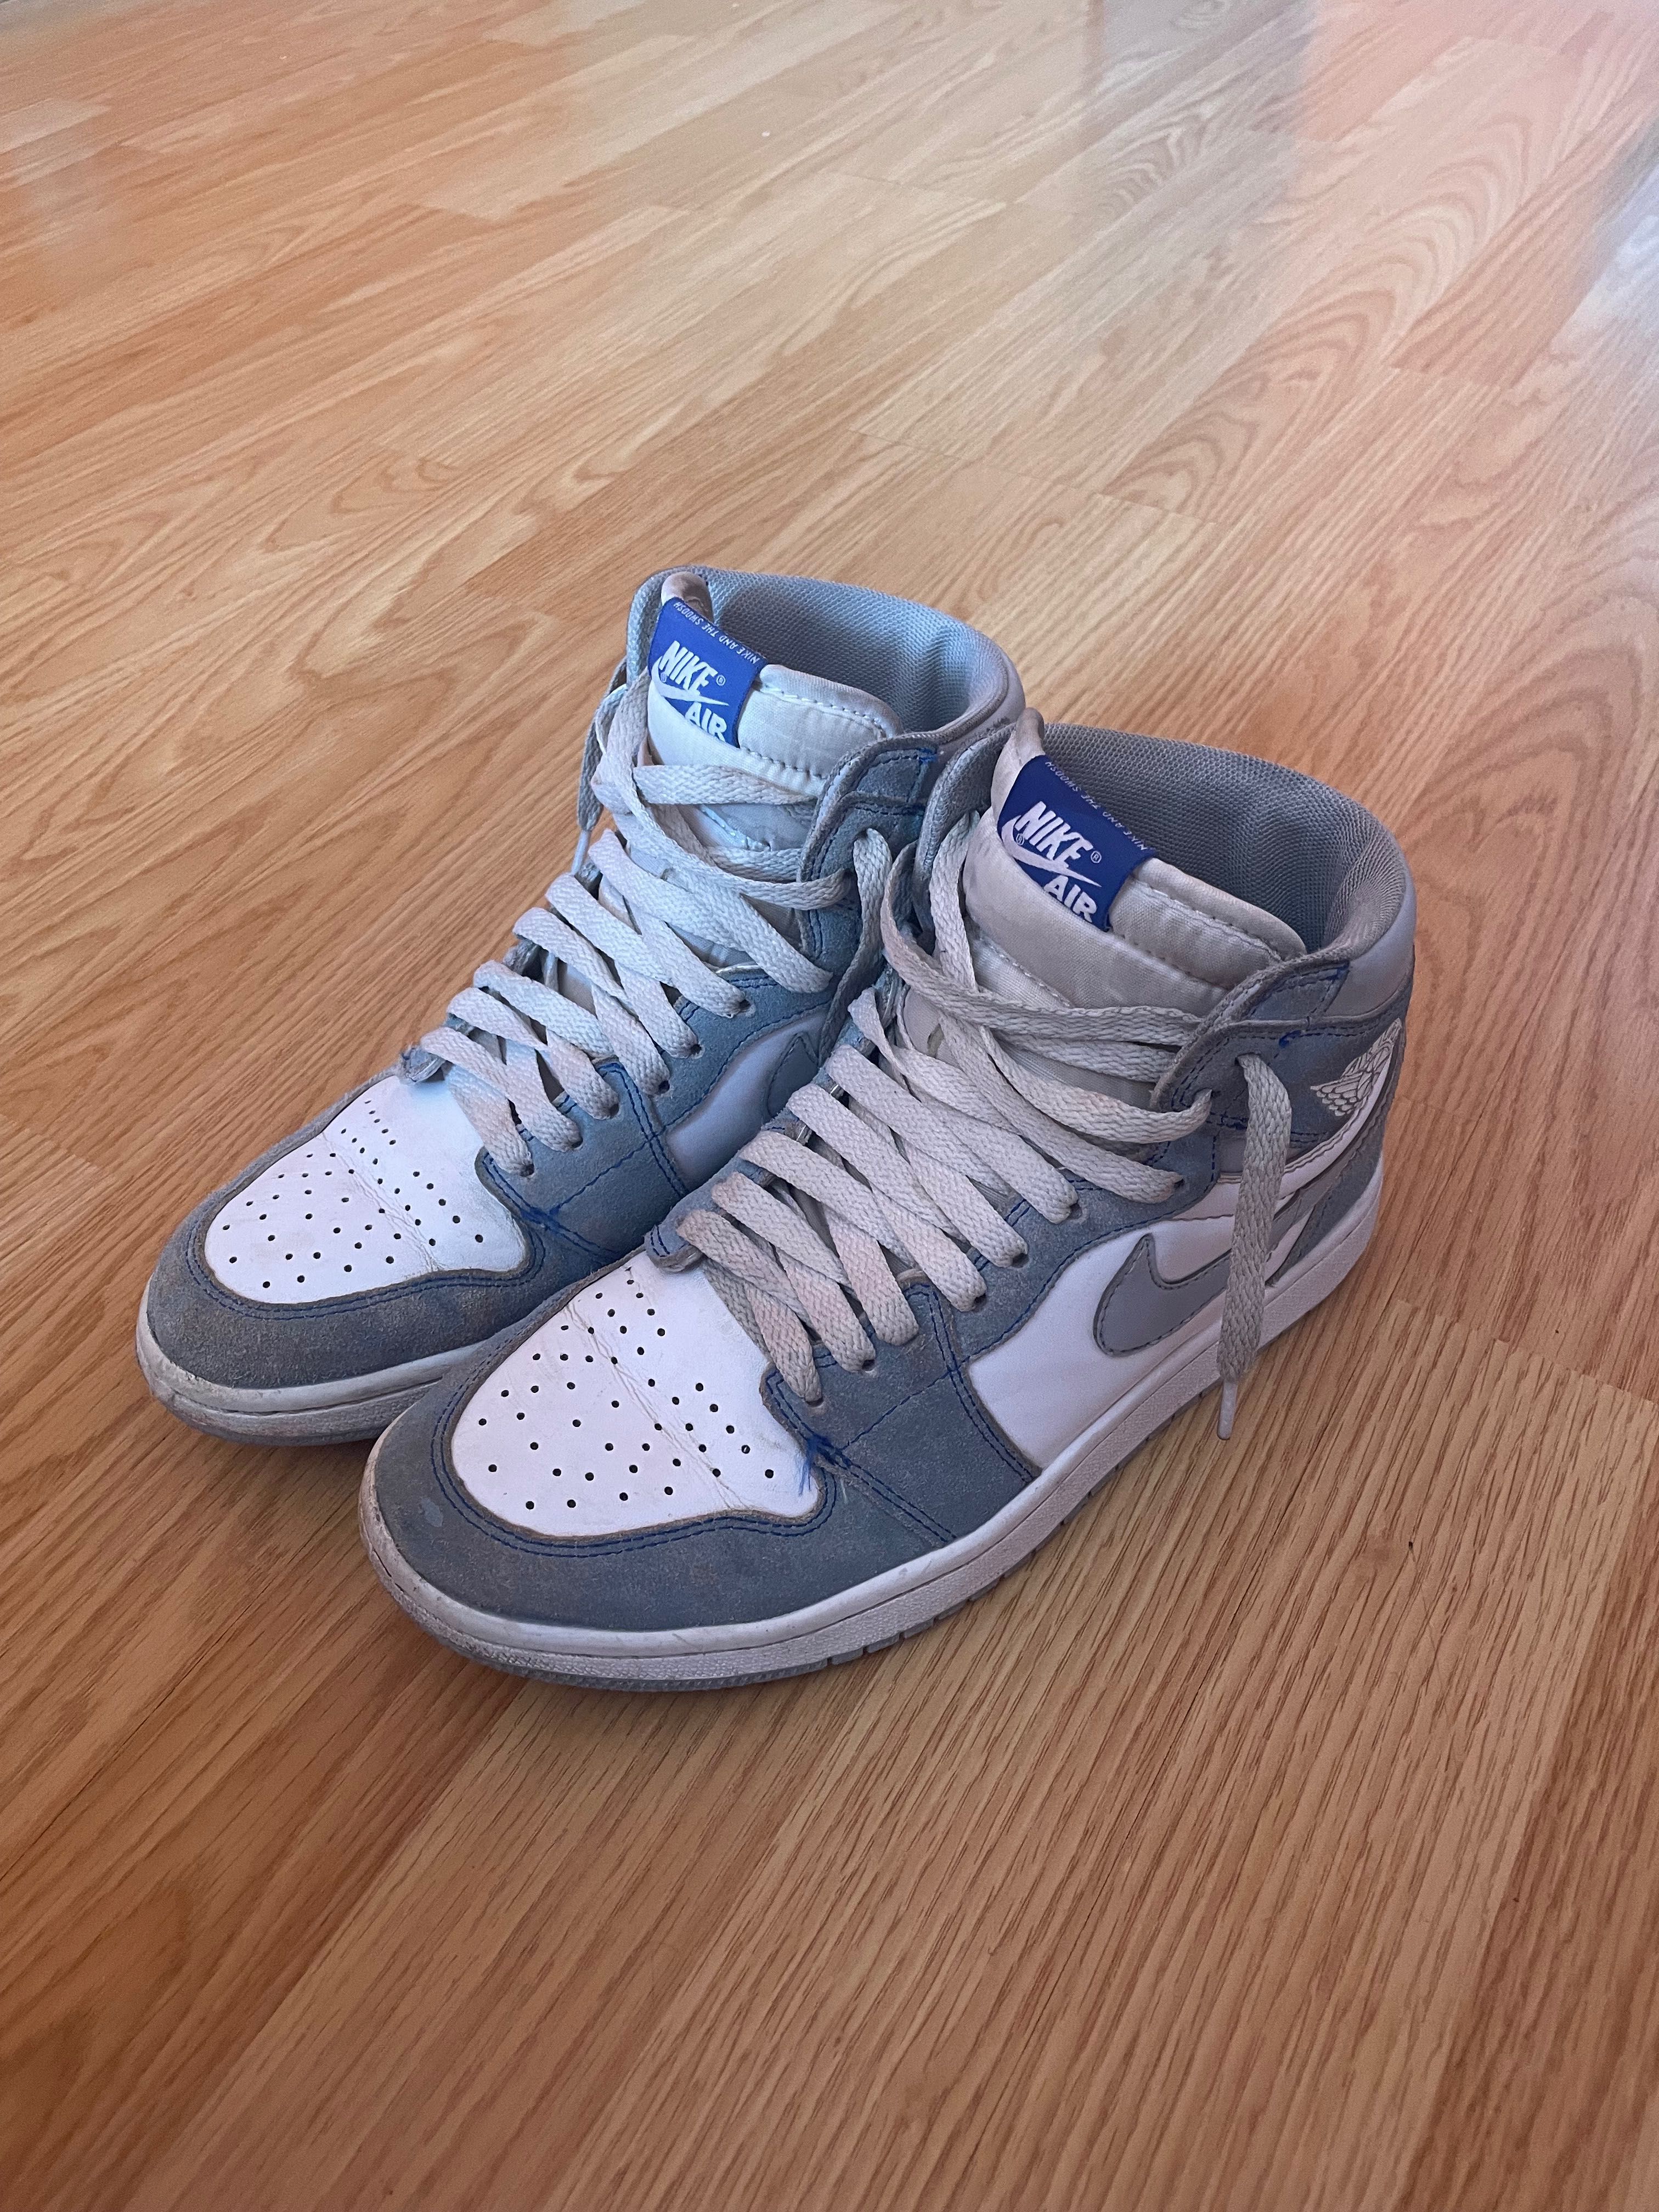 Nike air Jordan на замше голубой цвет 41 размер 25,5 см